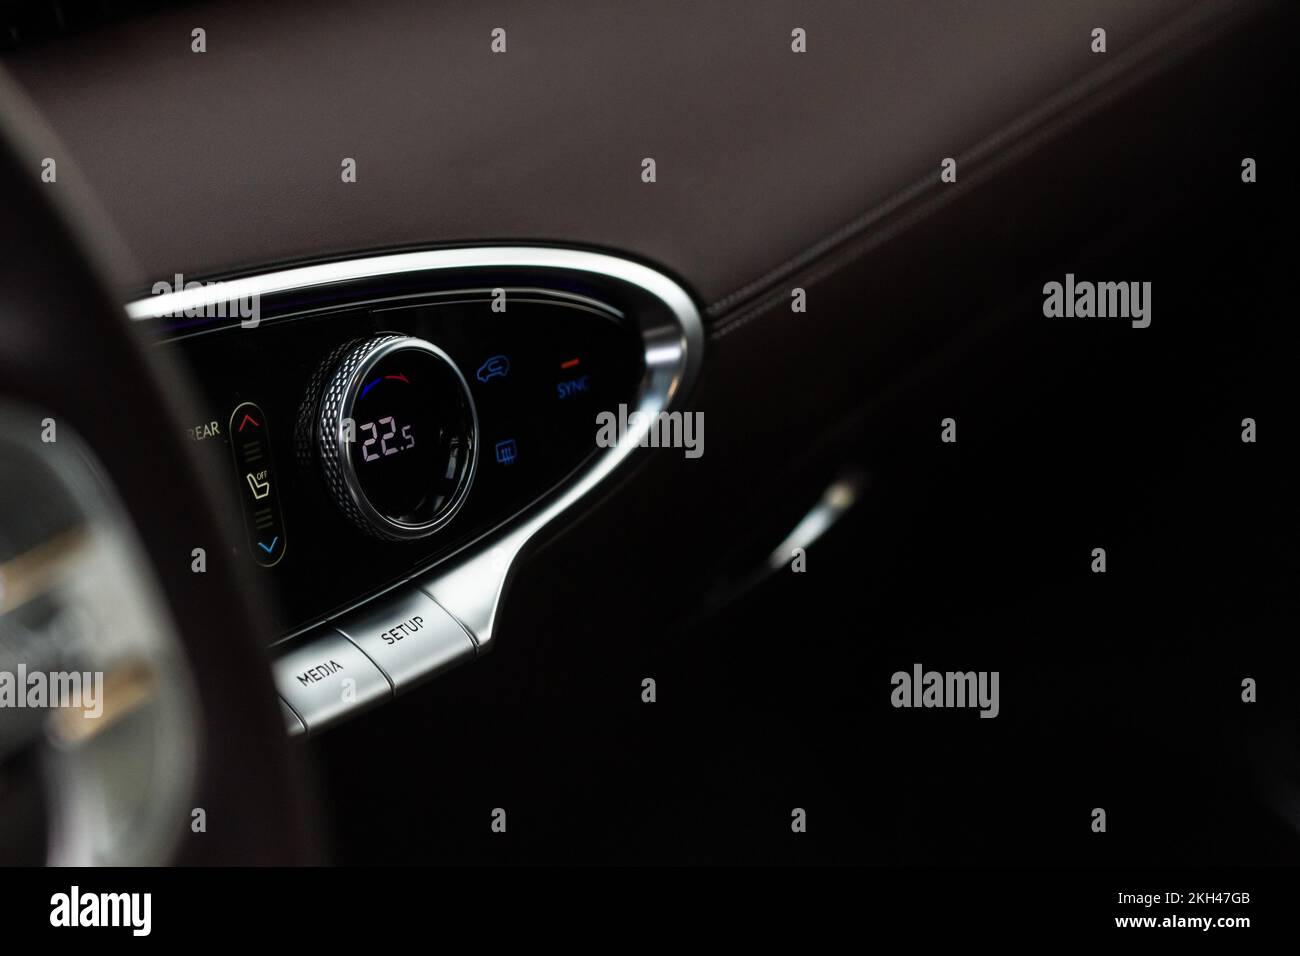 Modernes Lenkrad mit Multifunktionstasten für die schnelle Steuerung,  Nahaufnahme Interieur Modern Black Innenraum komfortable Auto  Stockfotografie - Alamy